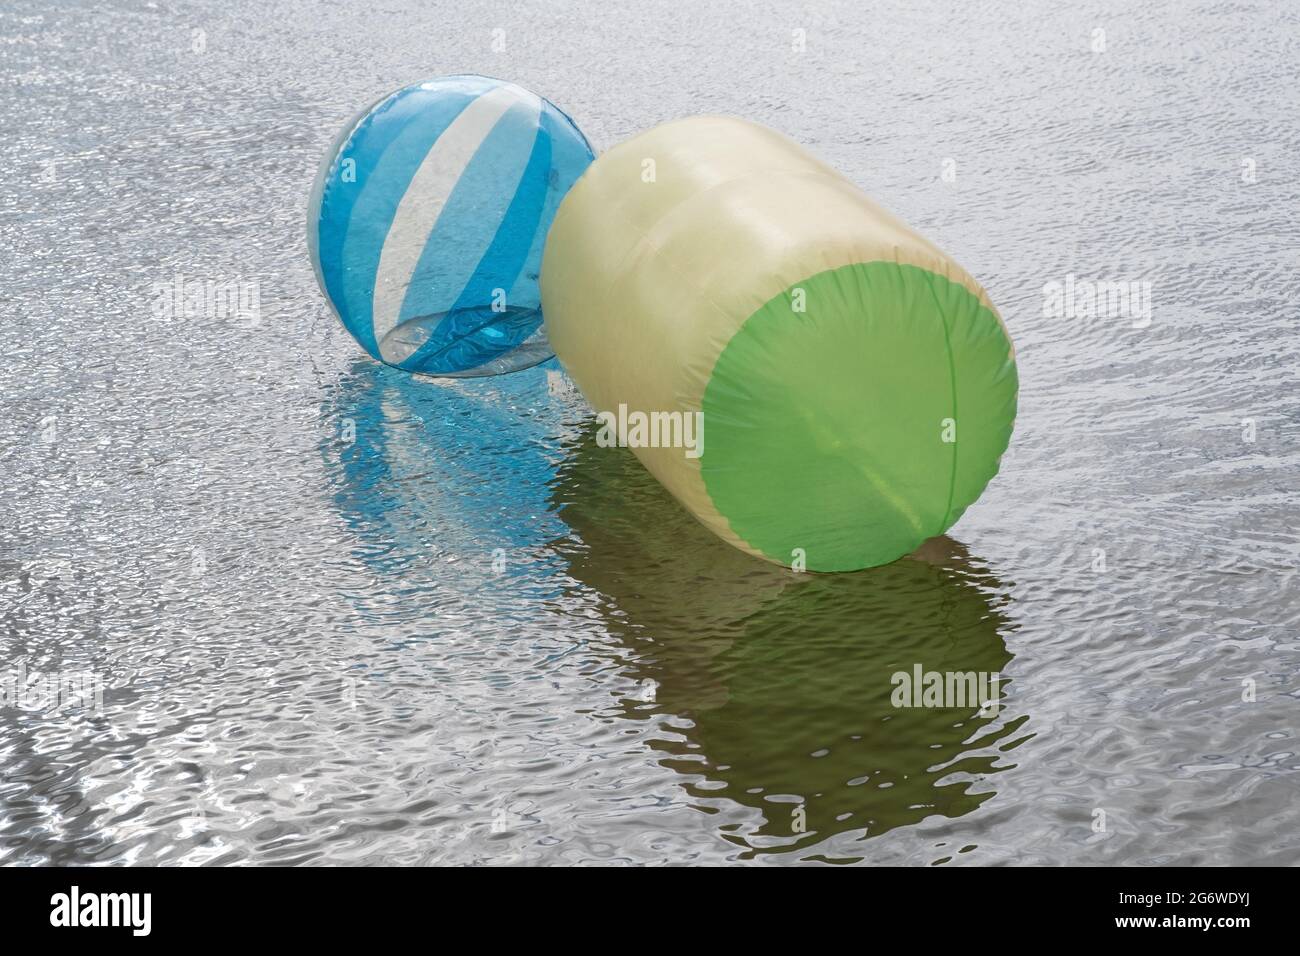 Zorb Walking Rolling Balloon. Leere transparente Wasserbälle auf dem Fluss  zur Sommerzeit Stockfotografie - Alamy